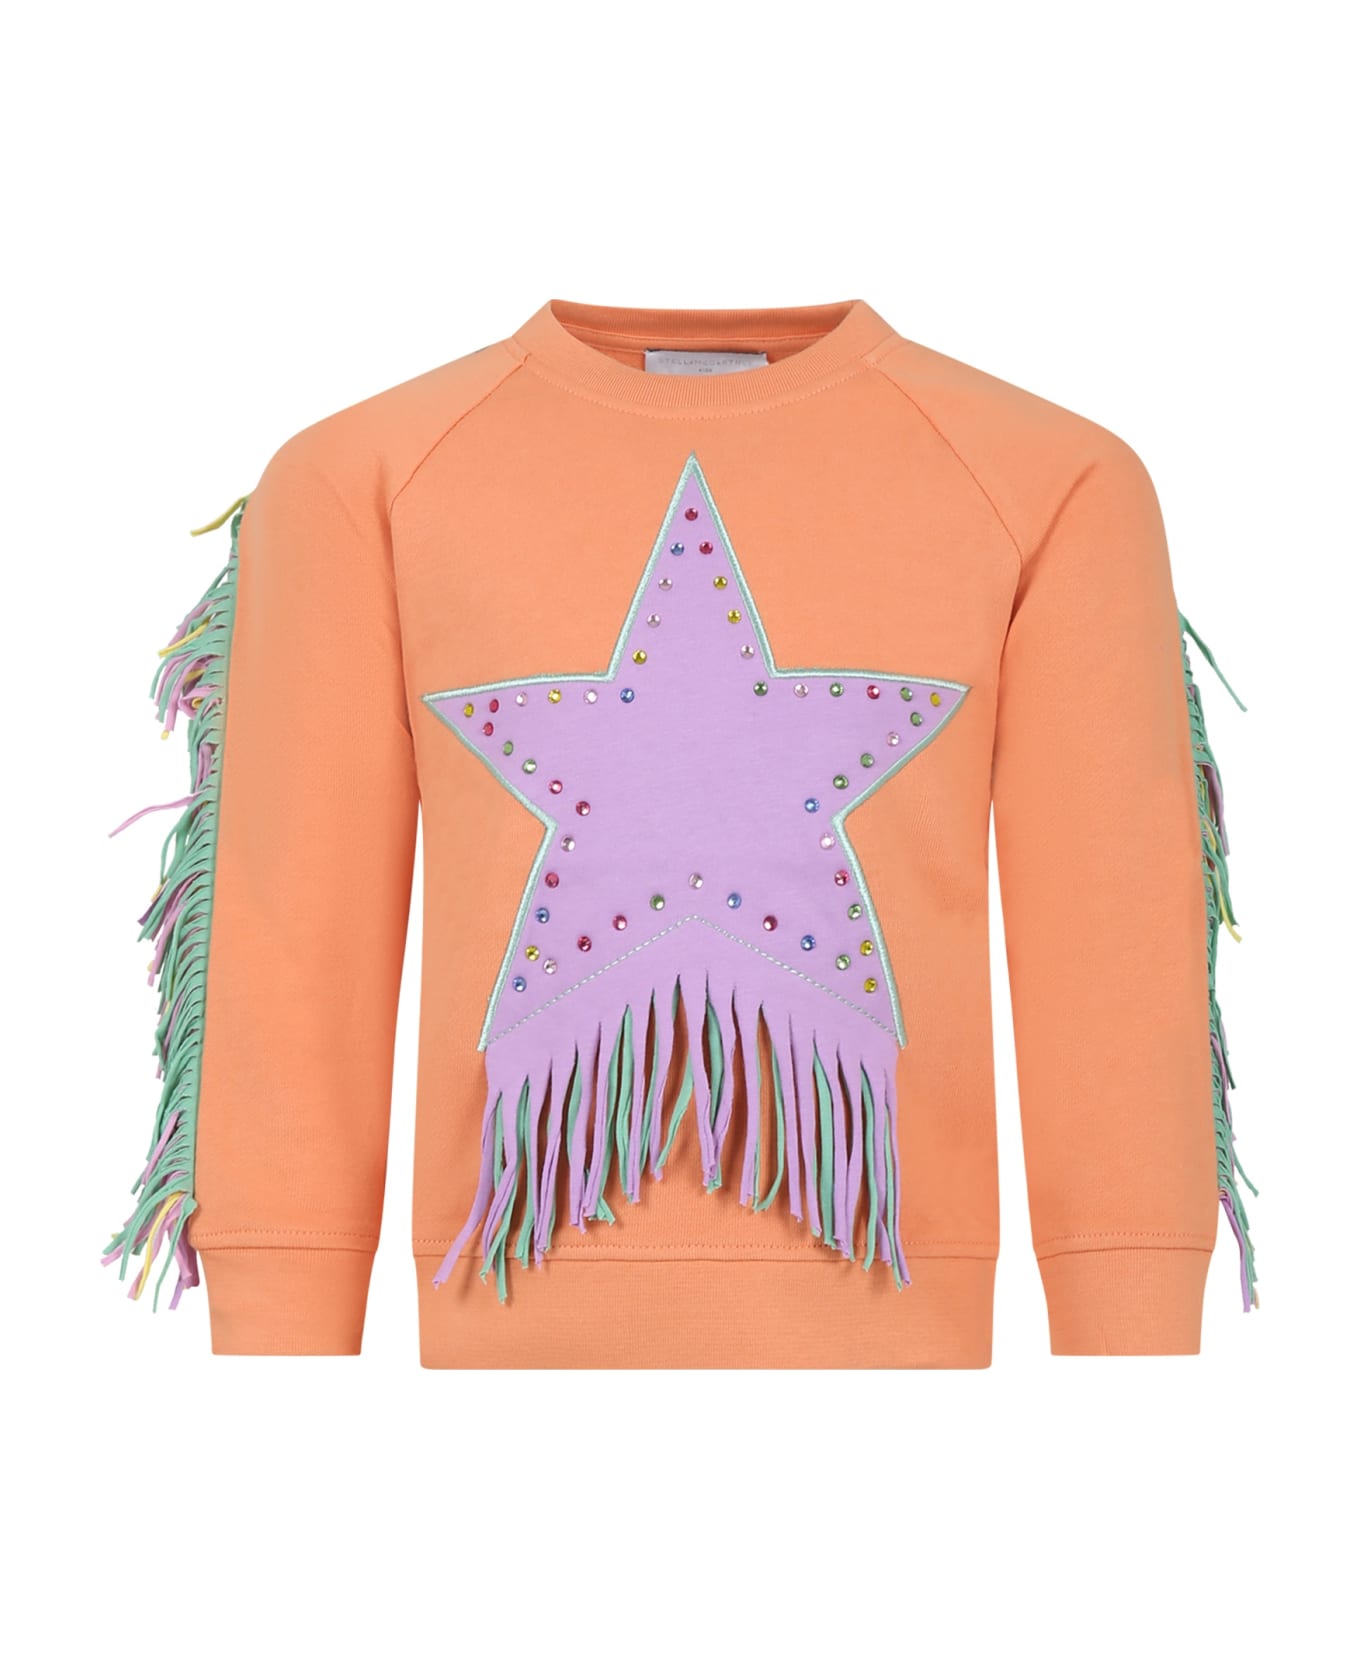 Stella McCartney Kids Orange Sweatshirt For Girl With Star - Orange ニットウェア＆スウェットシャツ